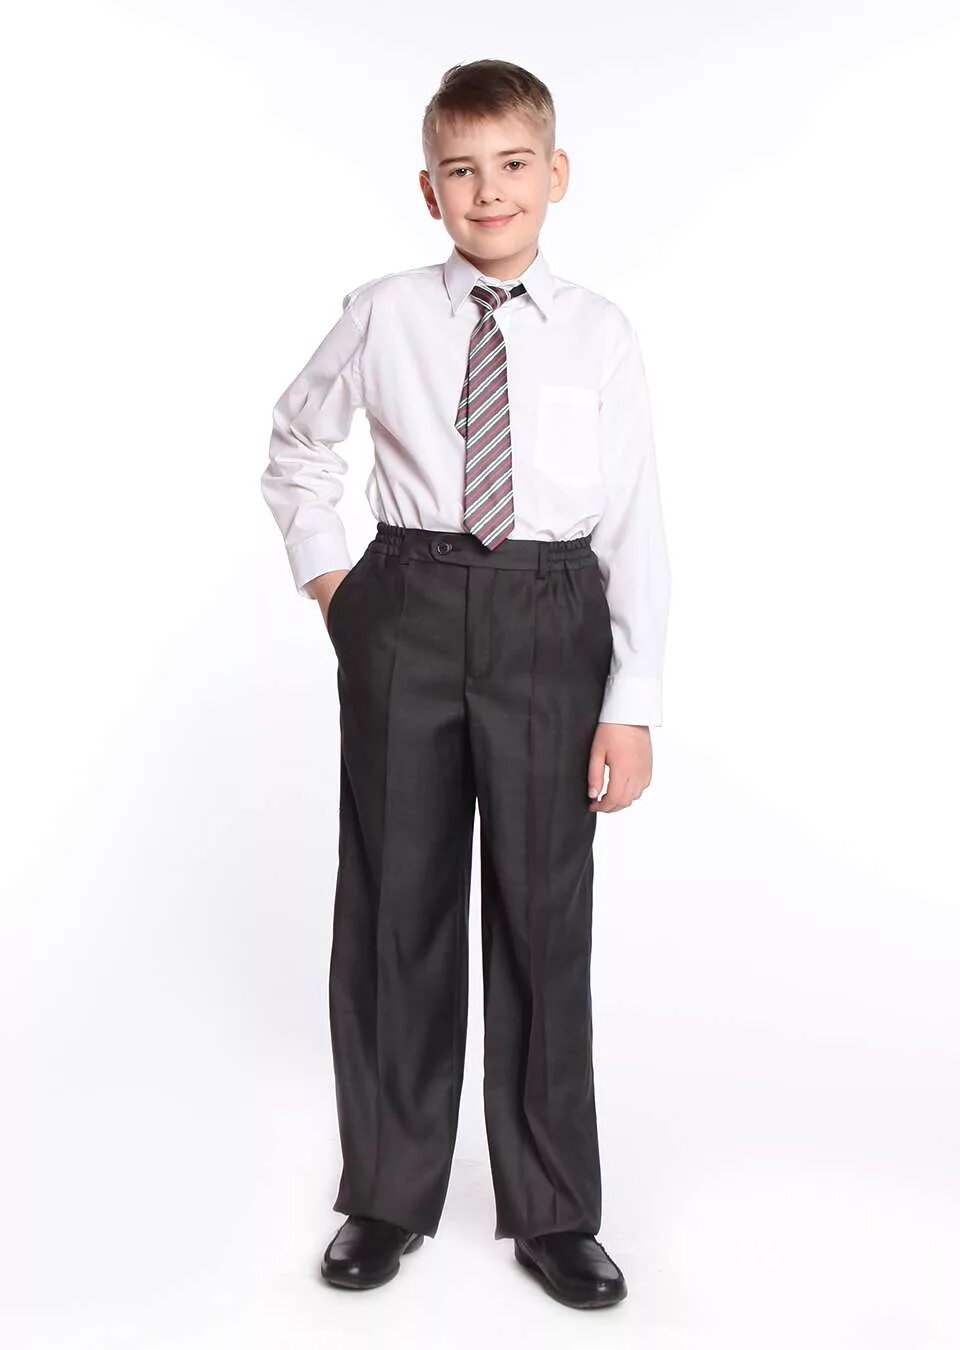 Классические брюки для мальчика. Школьные штаны для мальчиков. Школьник в брюках. Школьные брюки для мальчика. Брюки для школы для мальчиков